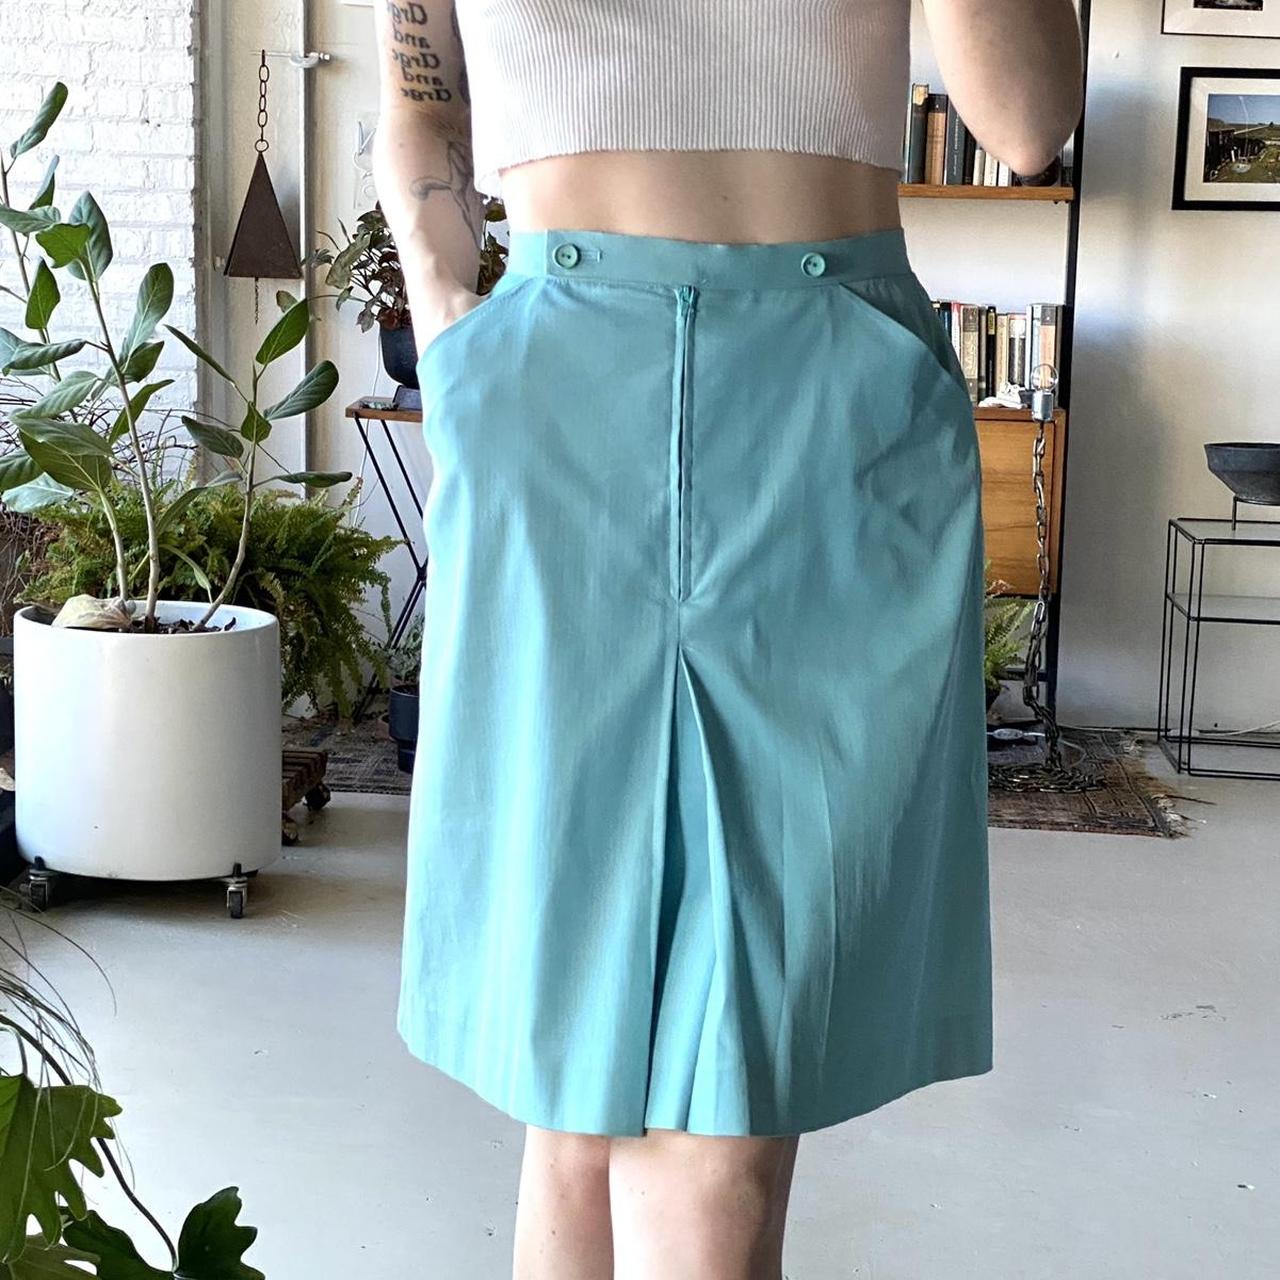 Chloé Women's Blue Skirt